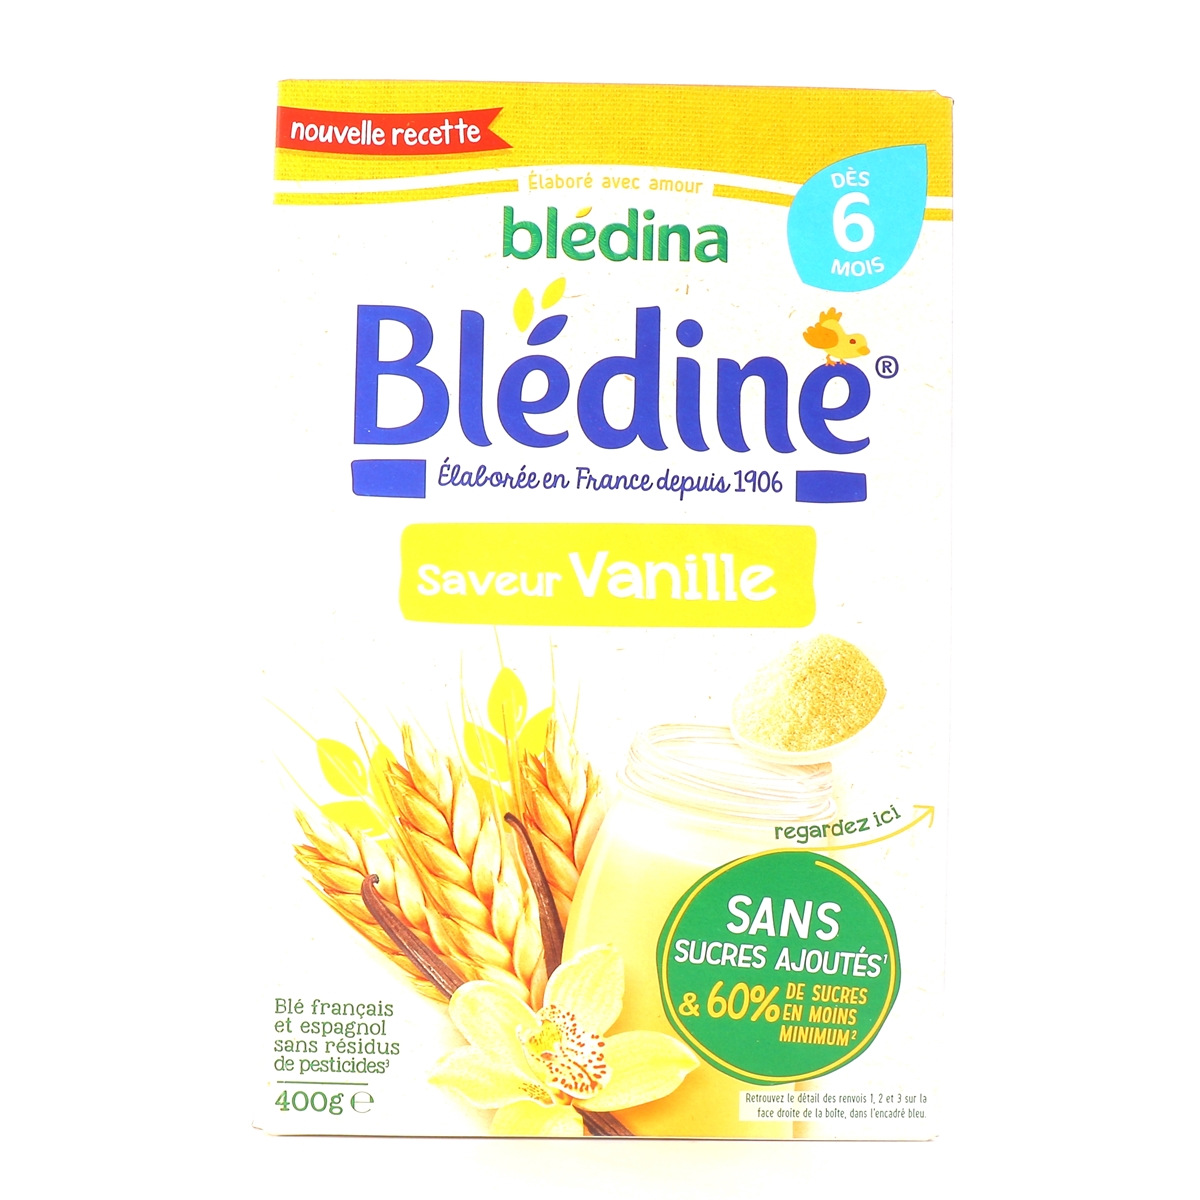 Blédina Blédine Dès 6 mois - Goût Vanille ou Biscuit